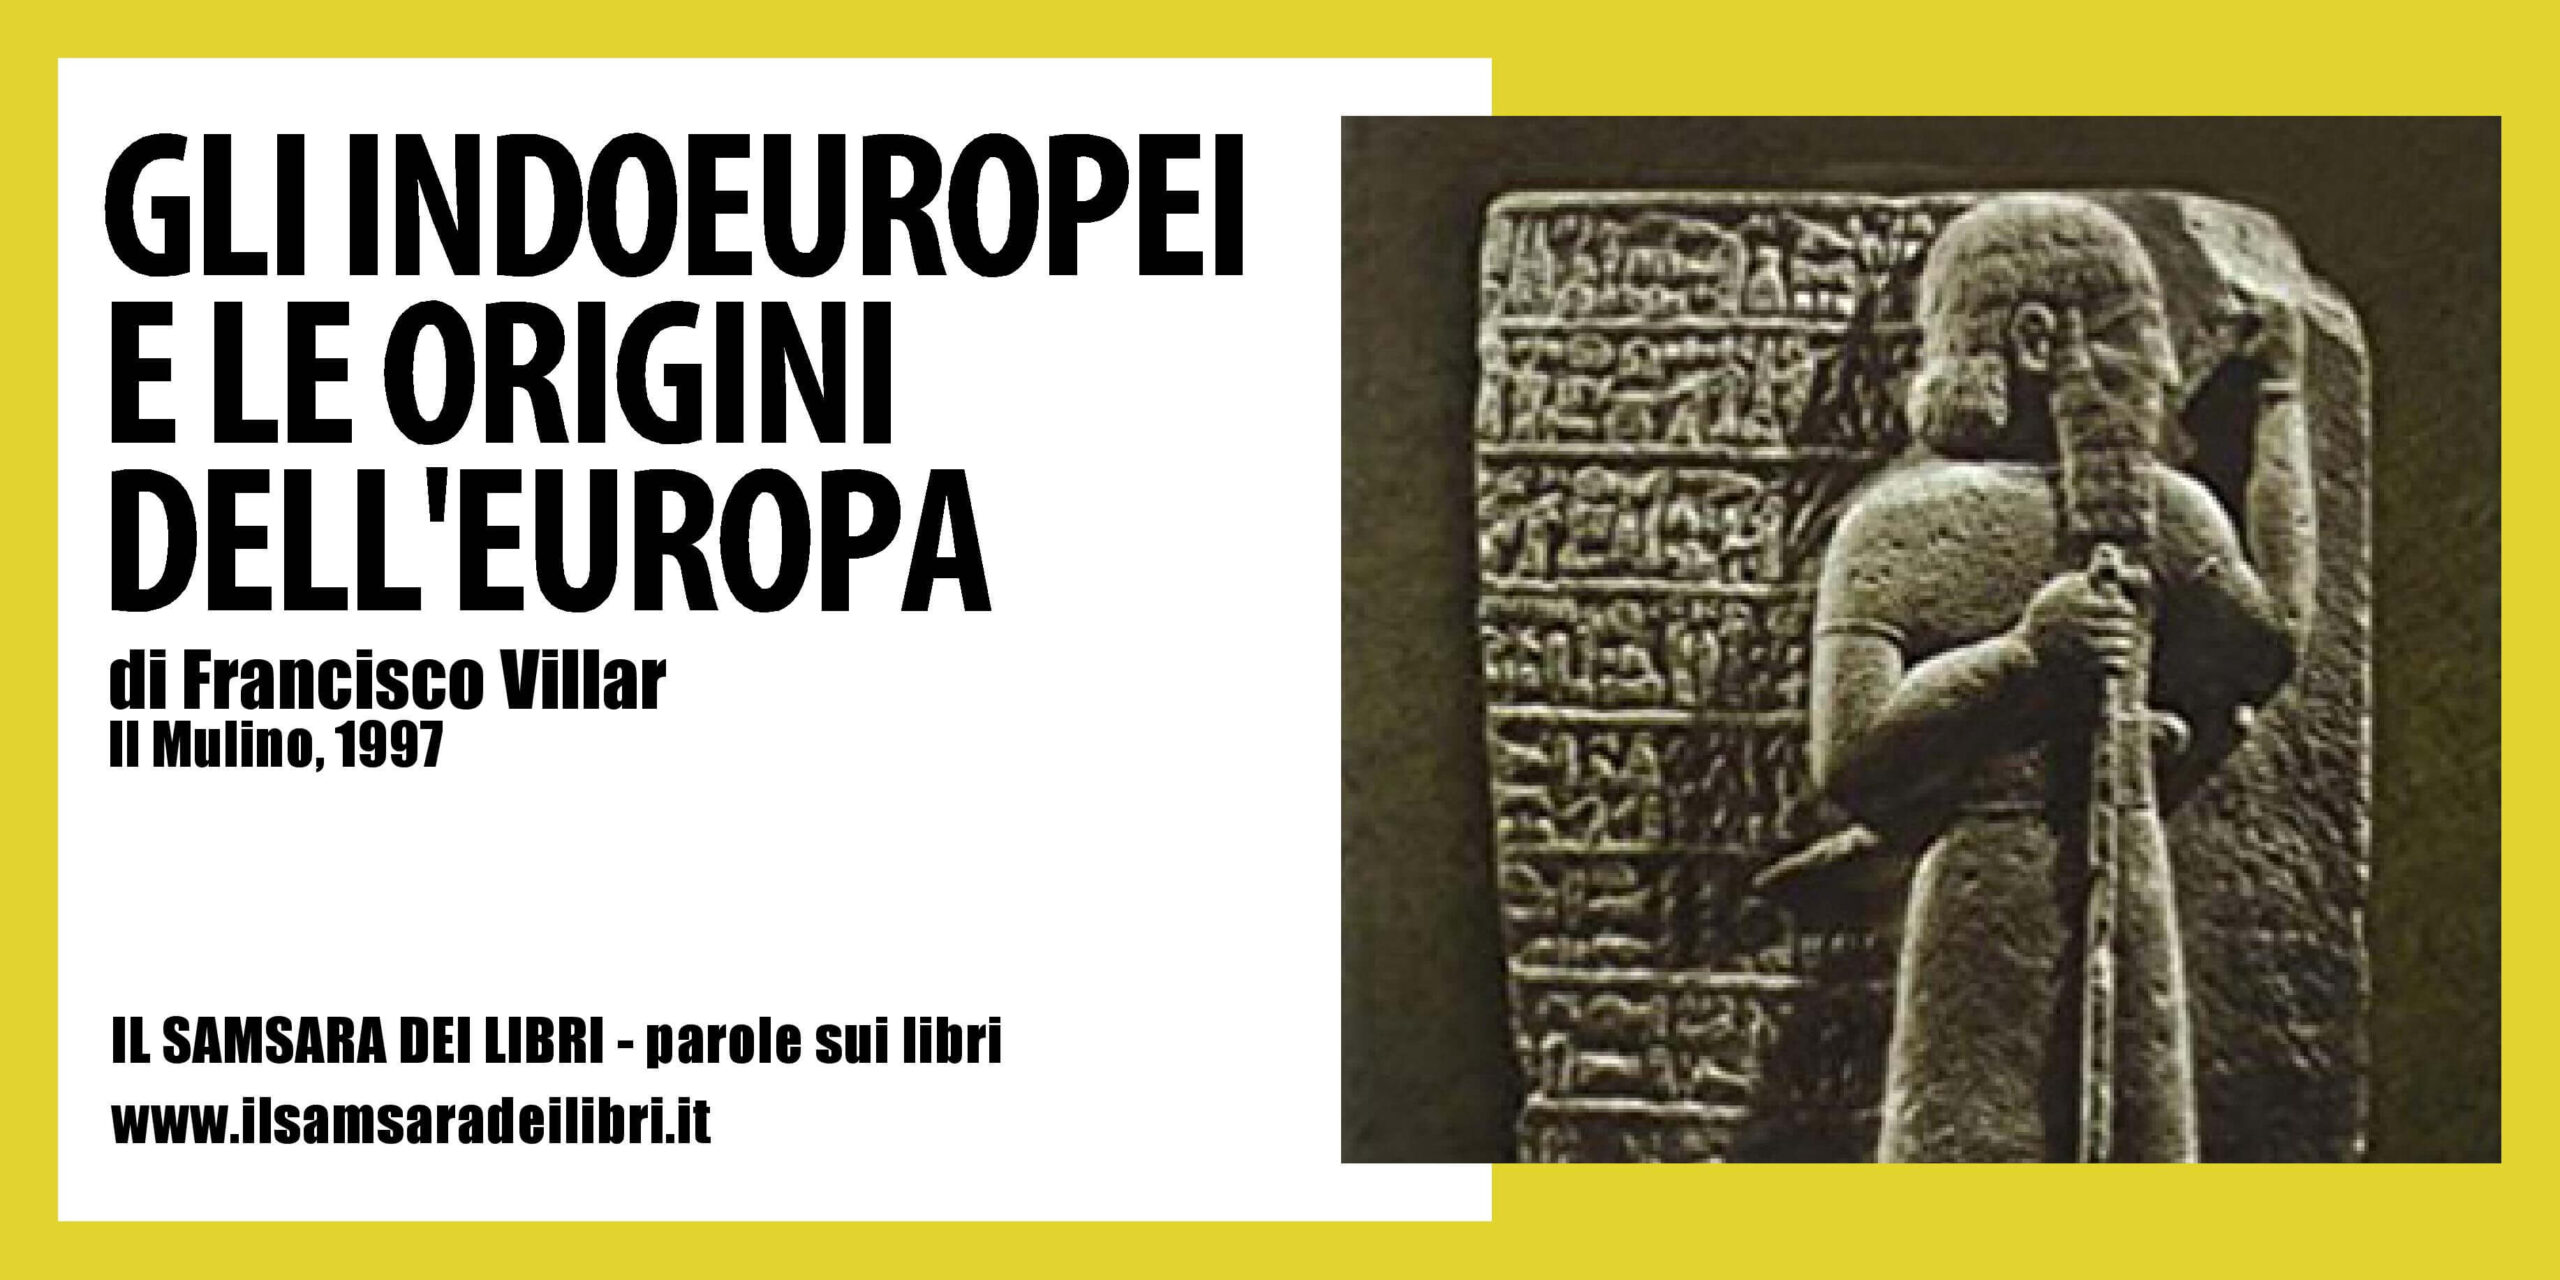 La copertina dedicata al libro Su Gli Indoeuropei e le origini dell'Europa